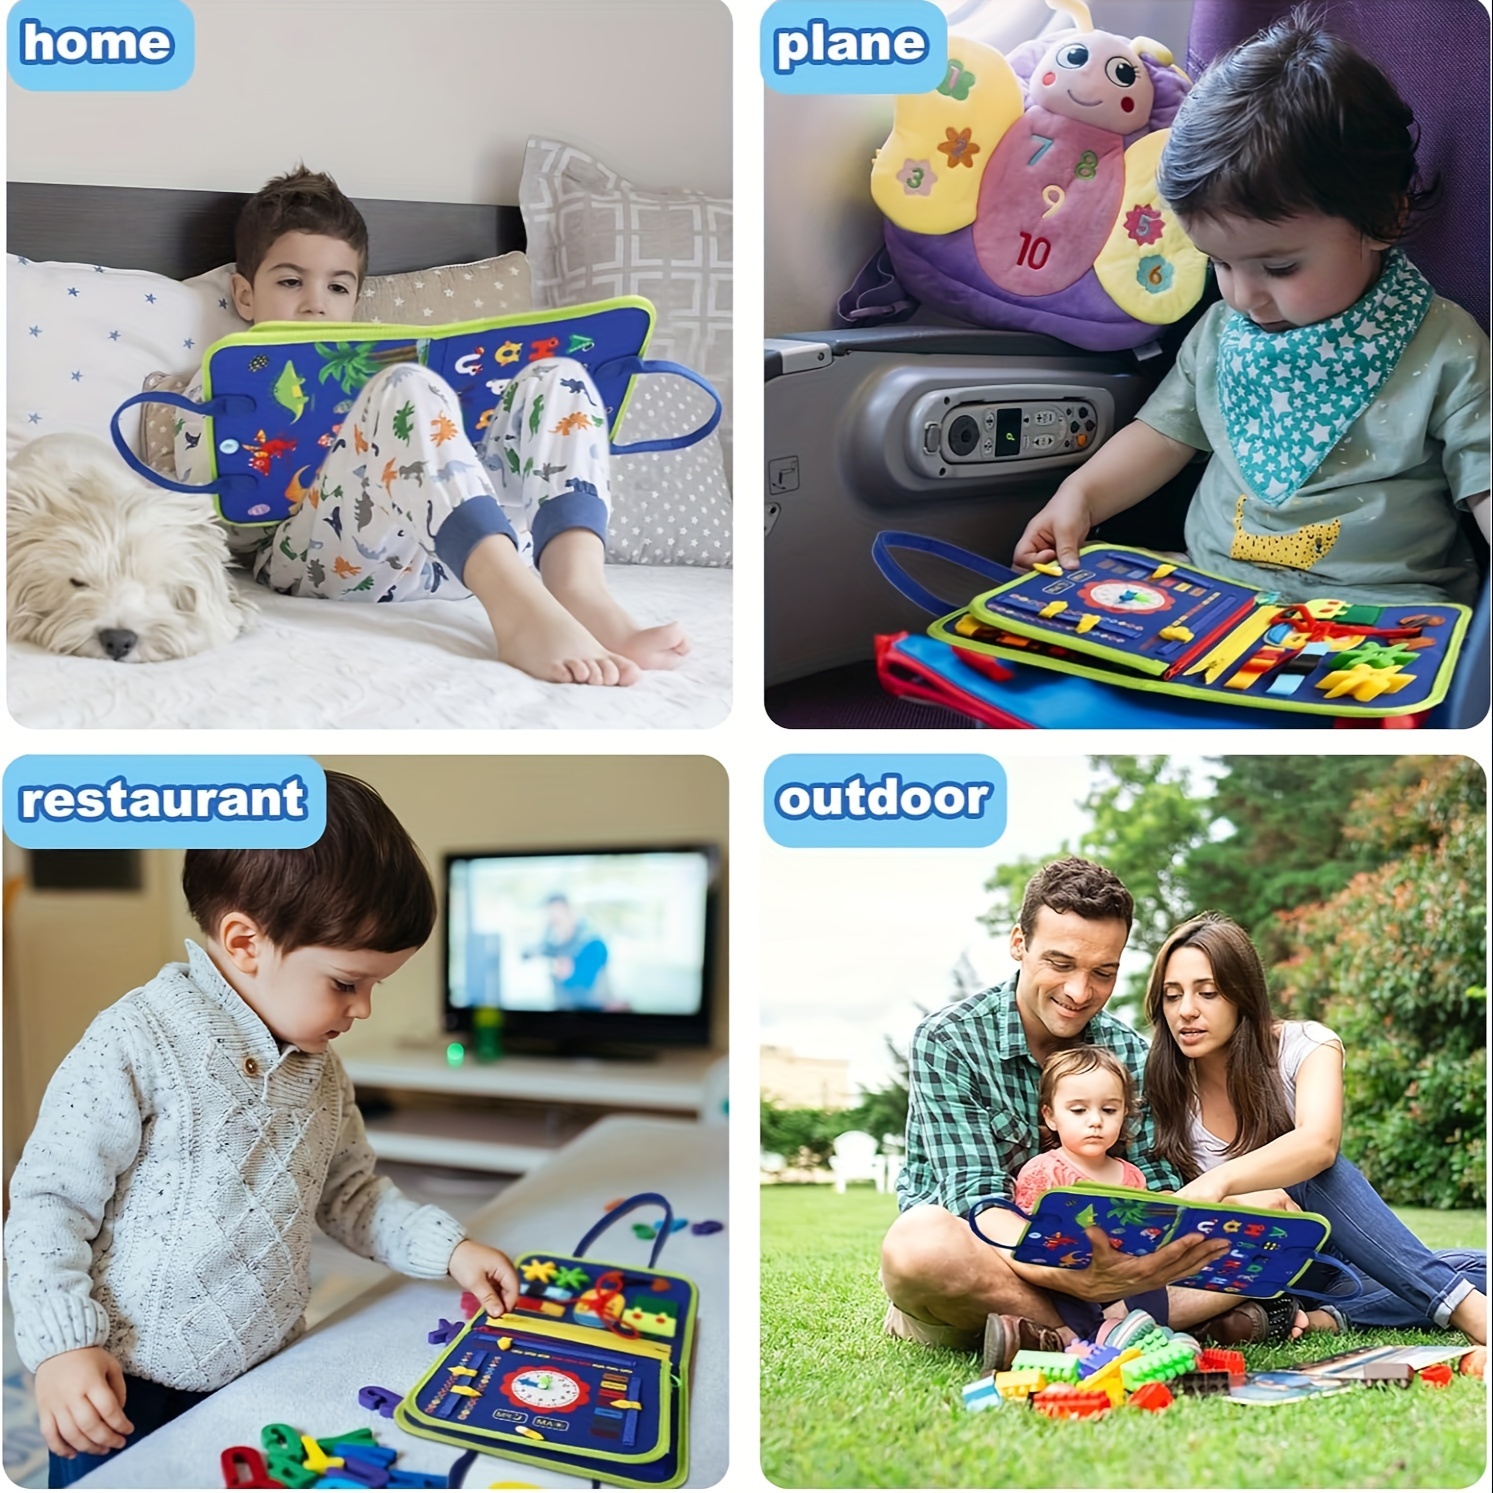  Juguetes Montessori para bebés de 1 año, juguetes sensoriales  para niños pequeños desarrollan habilidades motoras finas, juguetes de  aprendizaje para edades de 1 a 2 años, juguetes de viaje, juegos de